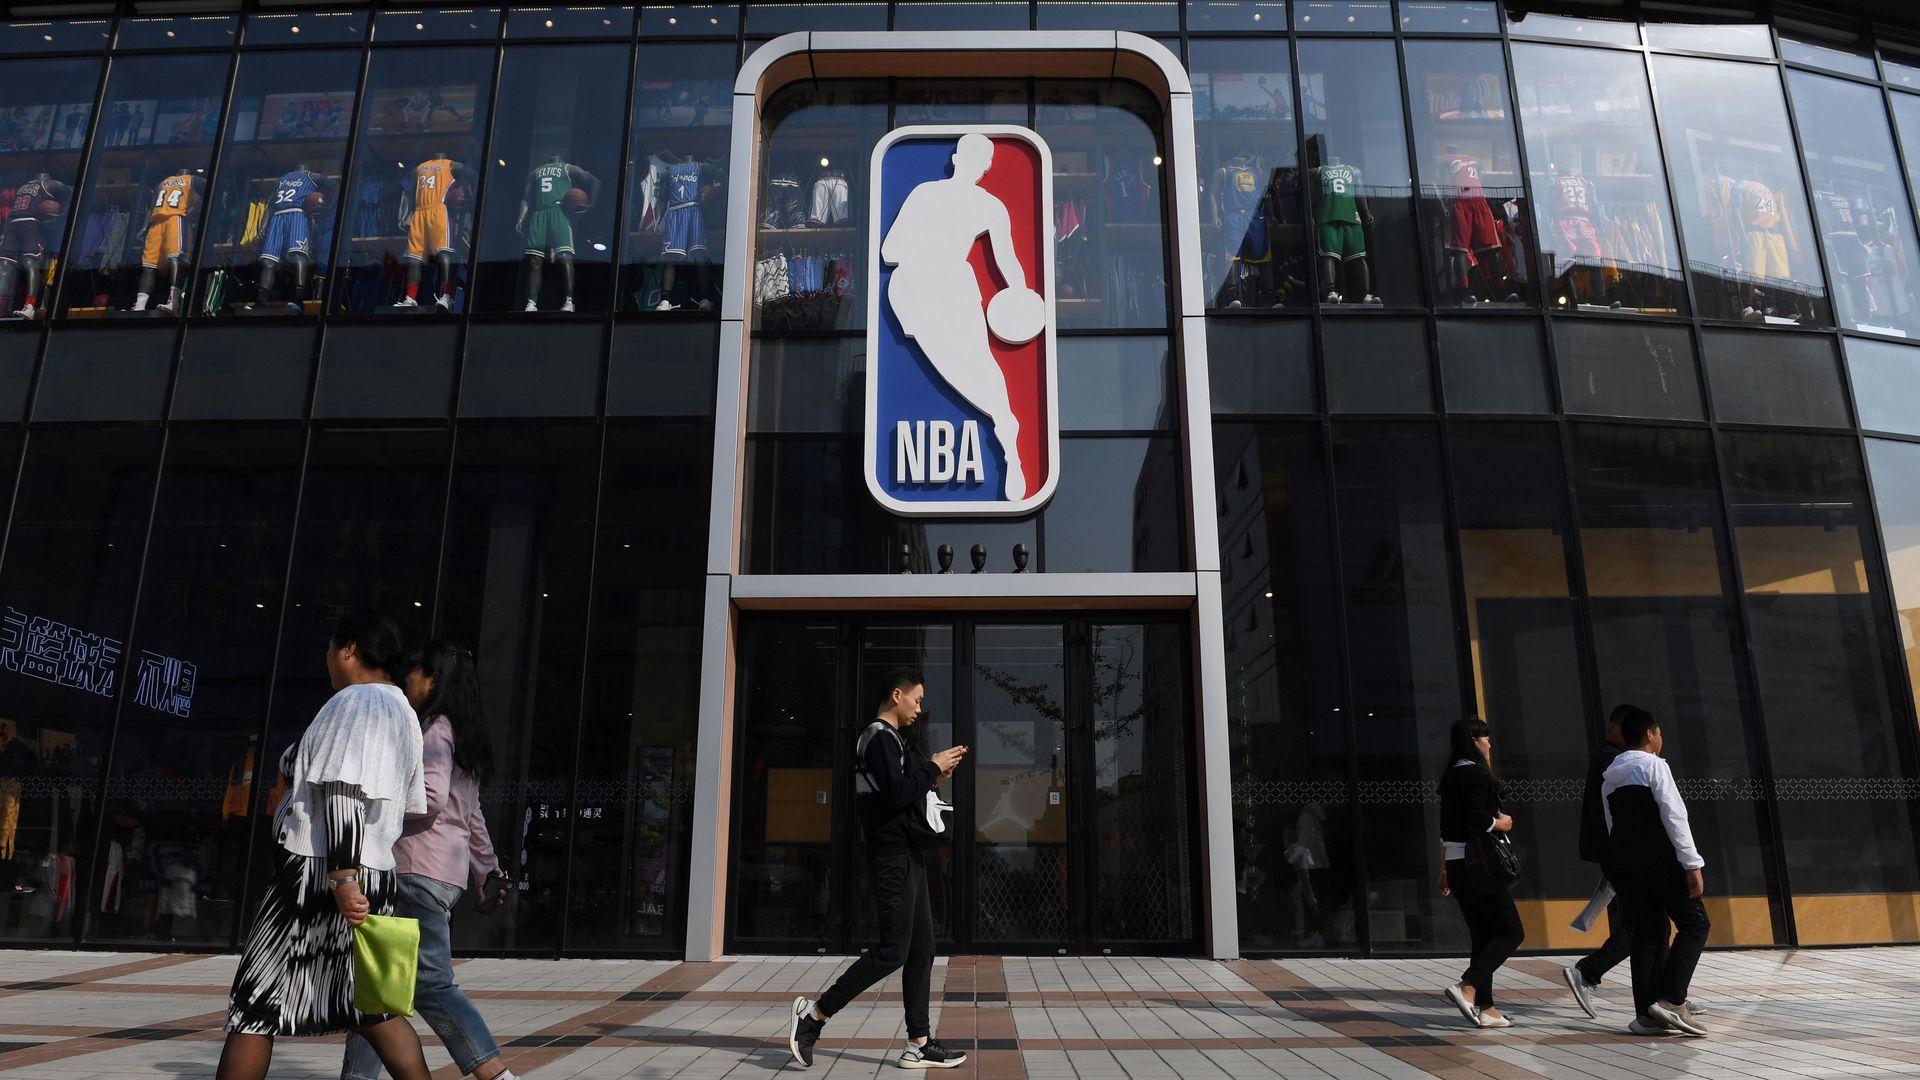 NBA store in Beijing.